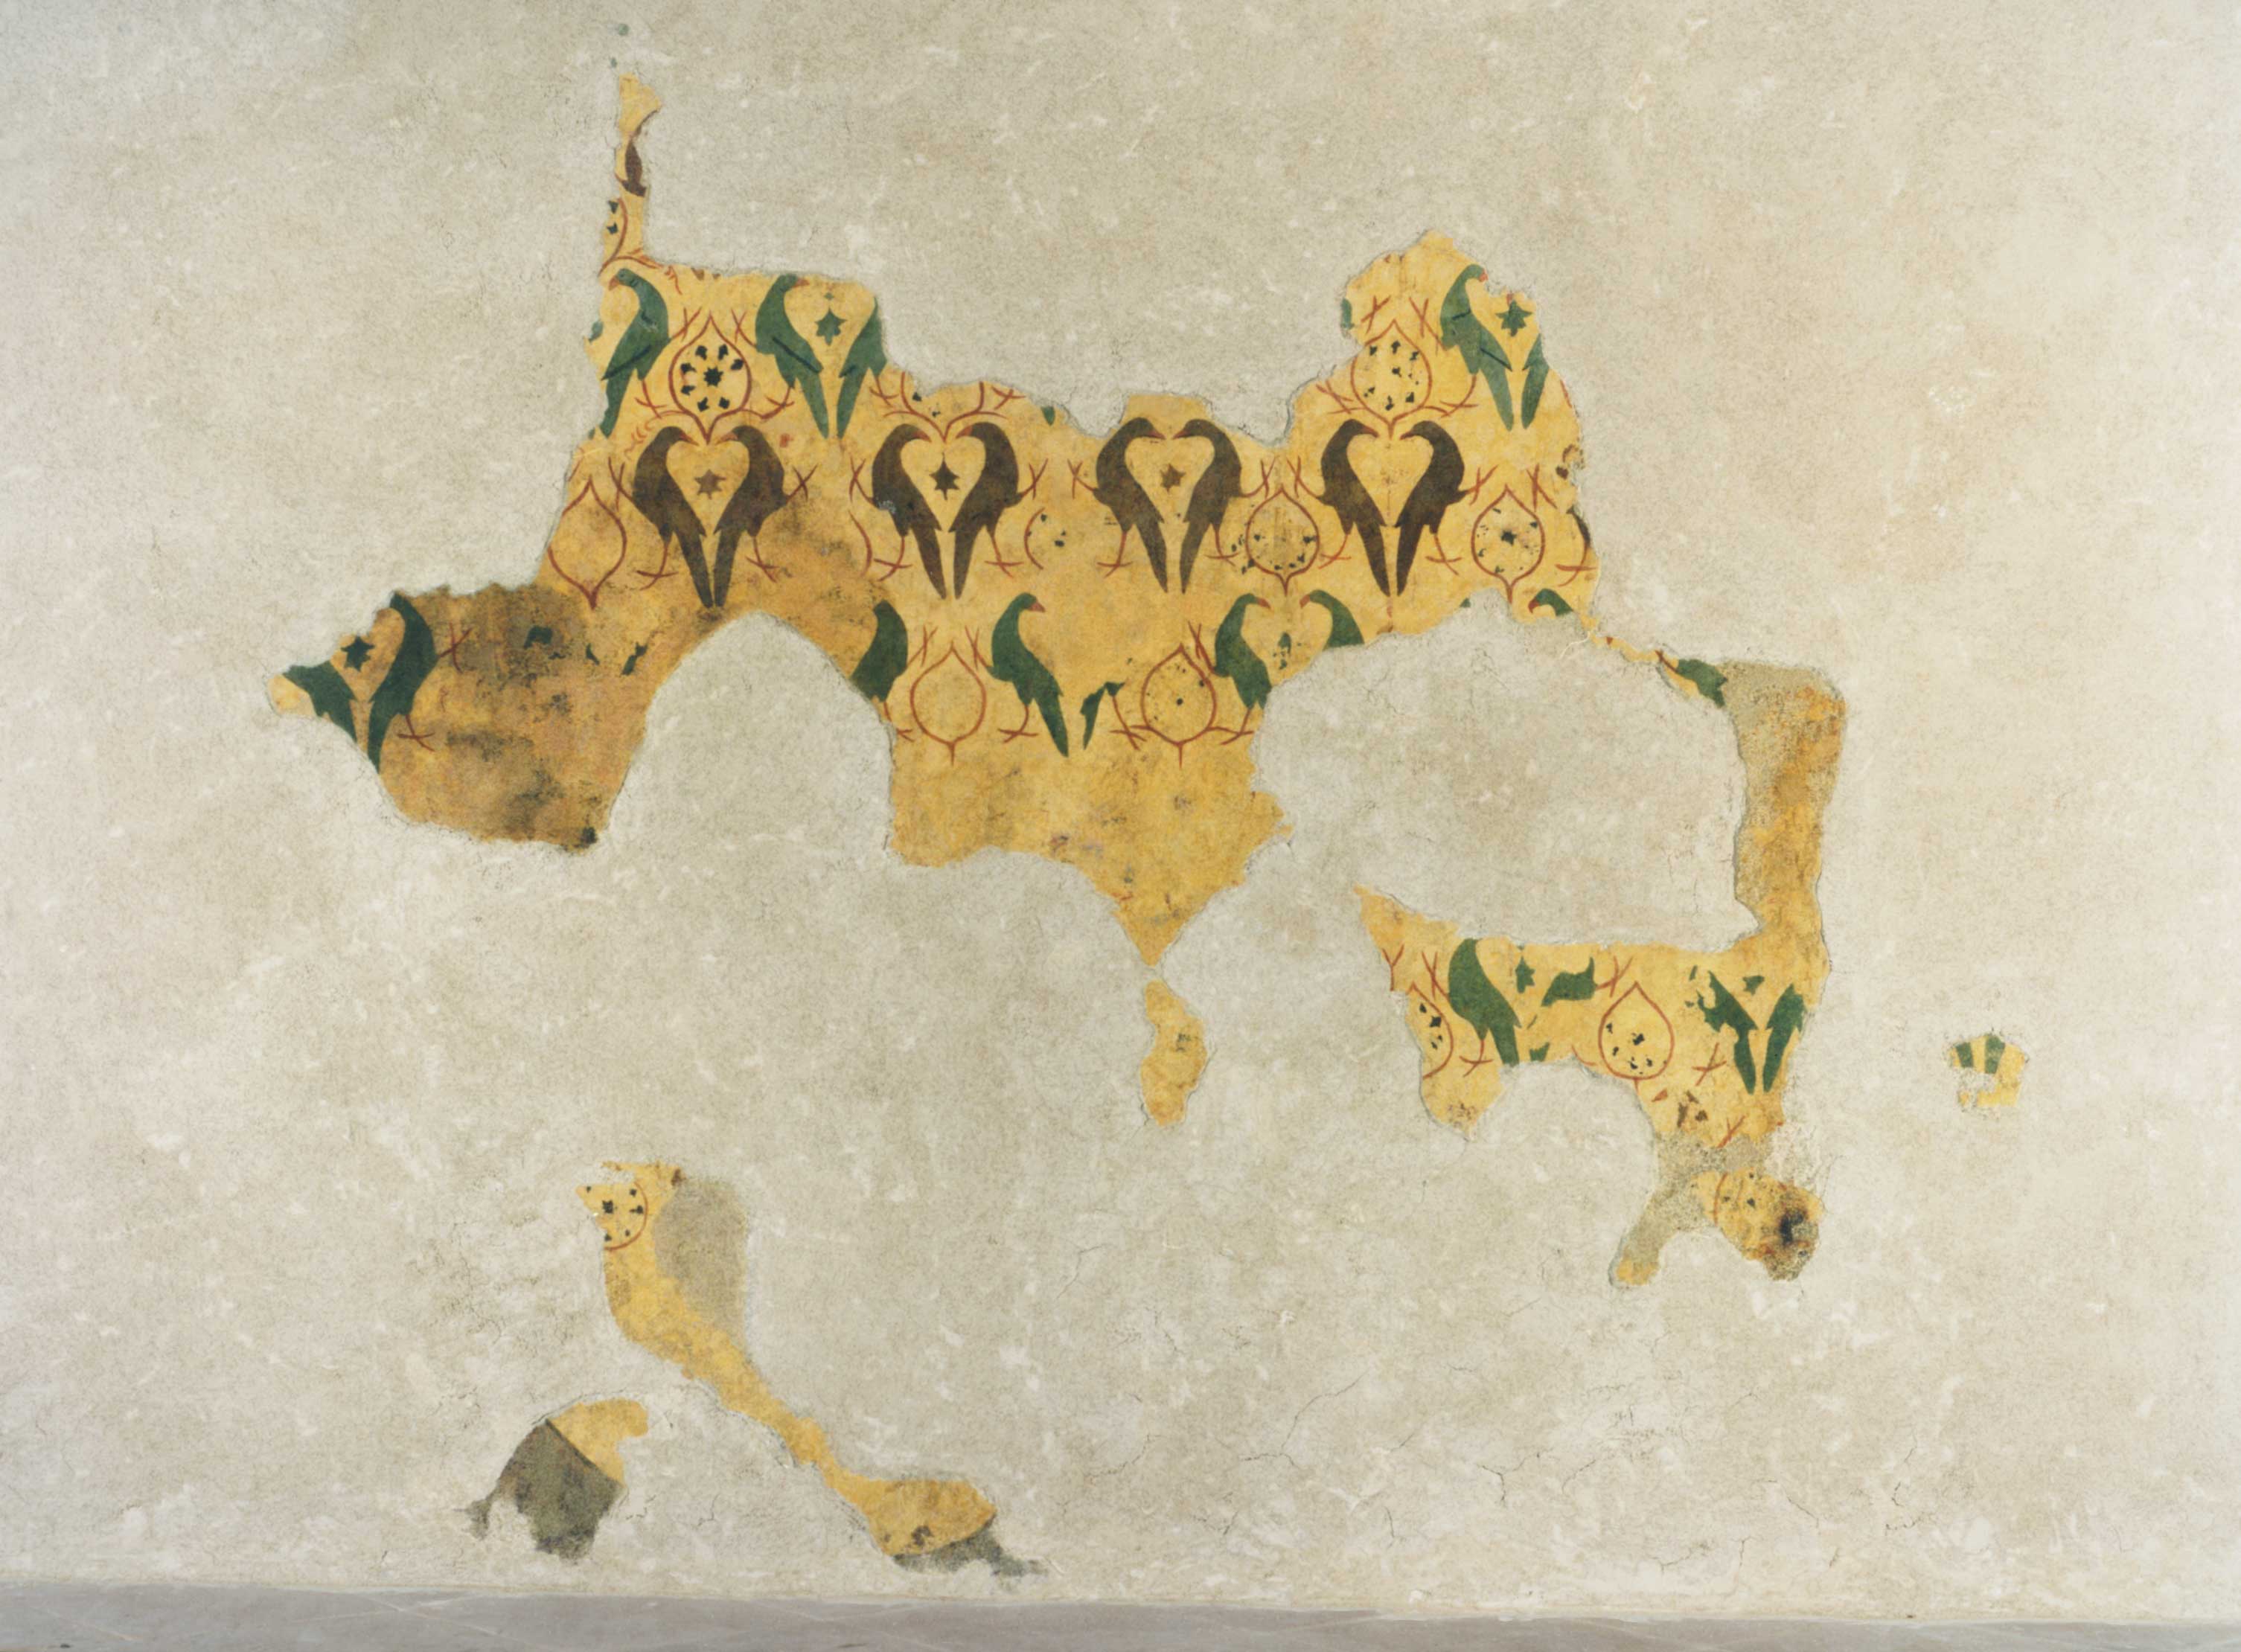 motivi decorativi vegetali con uccelli (dipinto, complesso decorativo) di Maestro della Dormitio di Terni (attribuito) - ambito umbro (fine/ inizio sec. XIV/ XV)